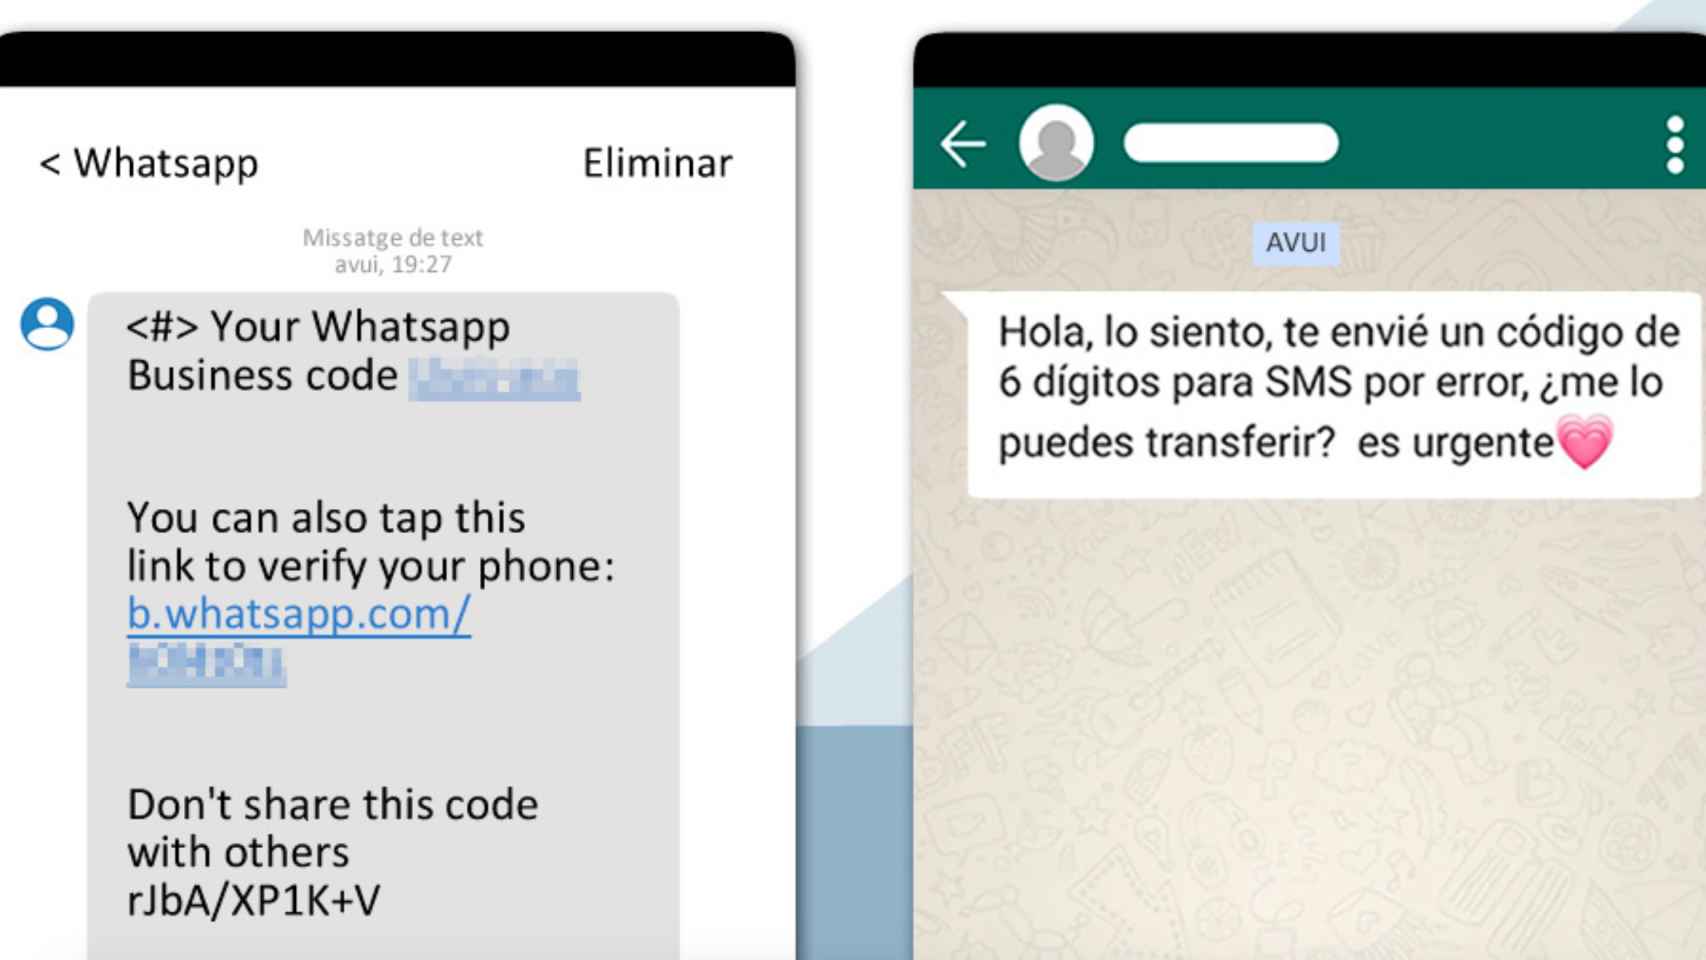 Suplantación de identidad en Whatsapp / MOSSOS D'ESQUADRA